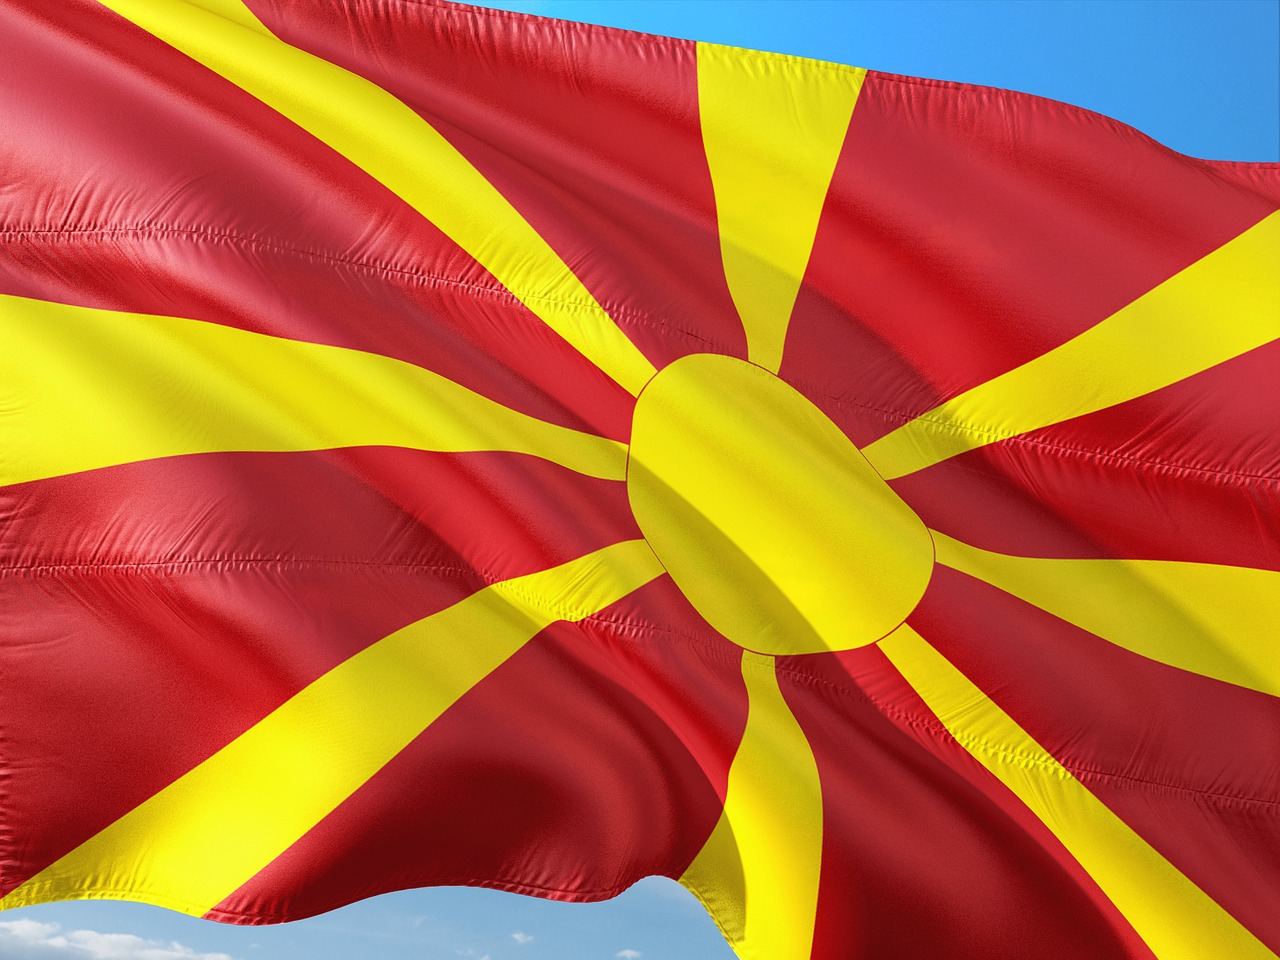 Перейменування втягує Македонію в глибоку політичну кризу, - дипломат Гончарук